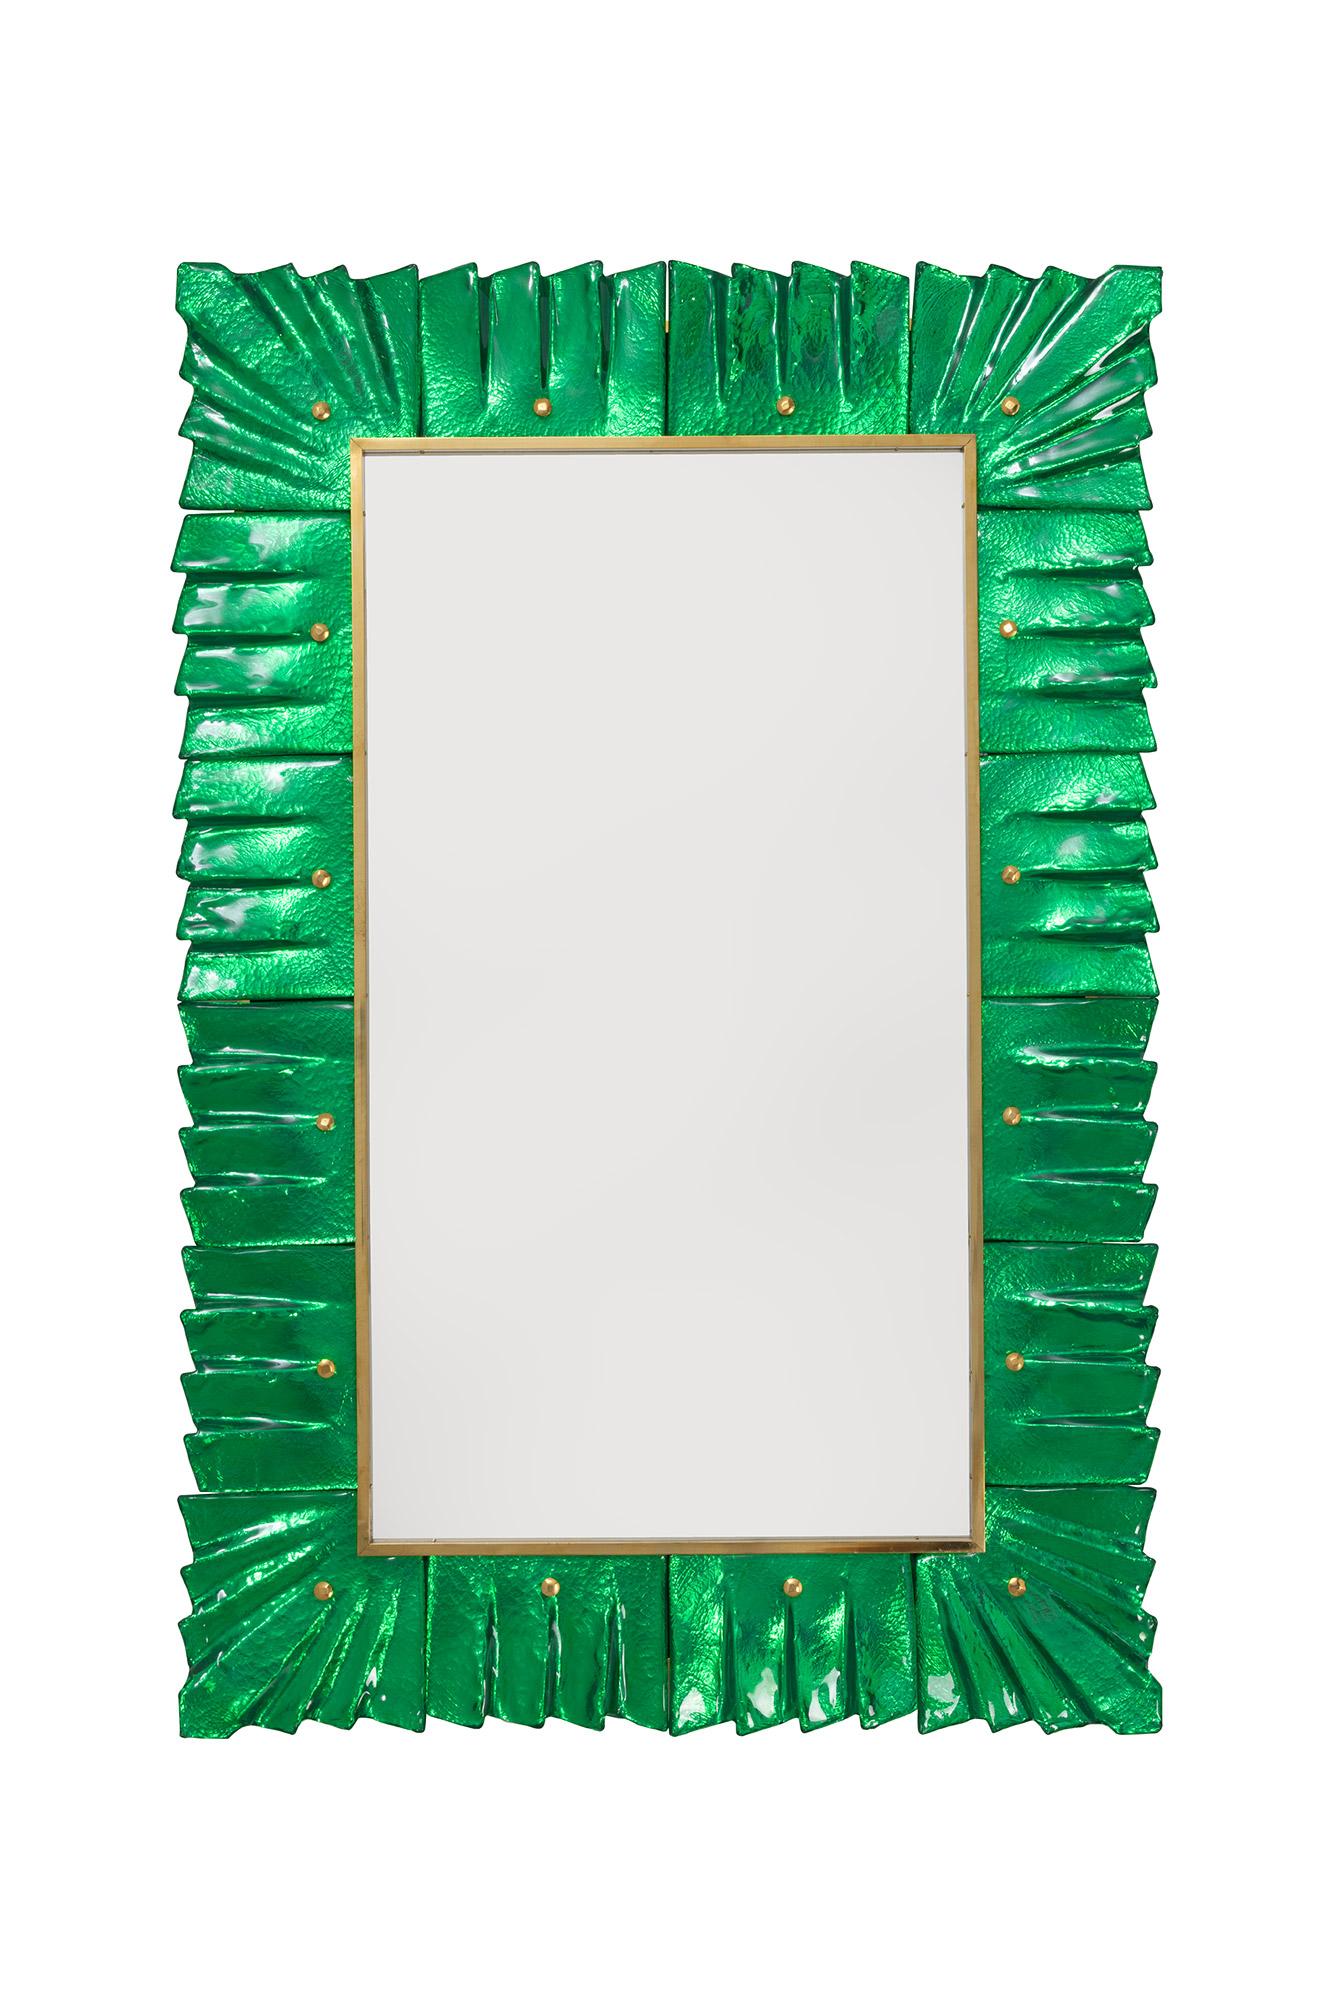 Paire de miroirs Murano encadrés de verre vert émeraude, en stock.
Plaque de miroir rectangulaire entourée de carreaux de verre ondulés de couleur vert émeraude retenus par des cabochons en laiton. 
Fabriqué à la main par une équipe d'artisans à